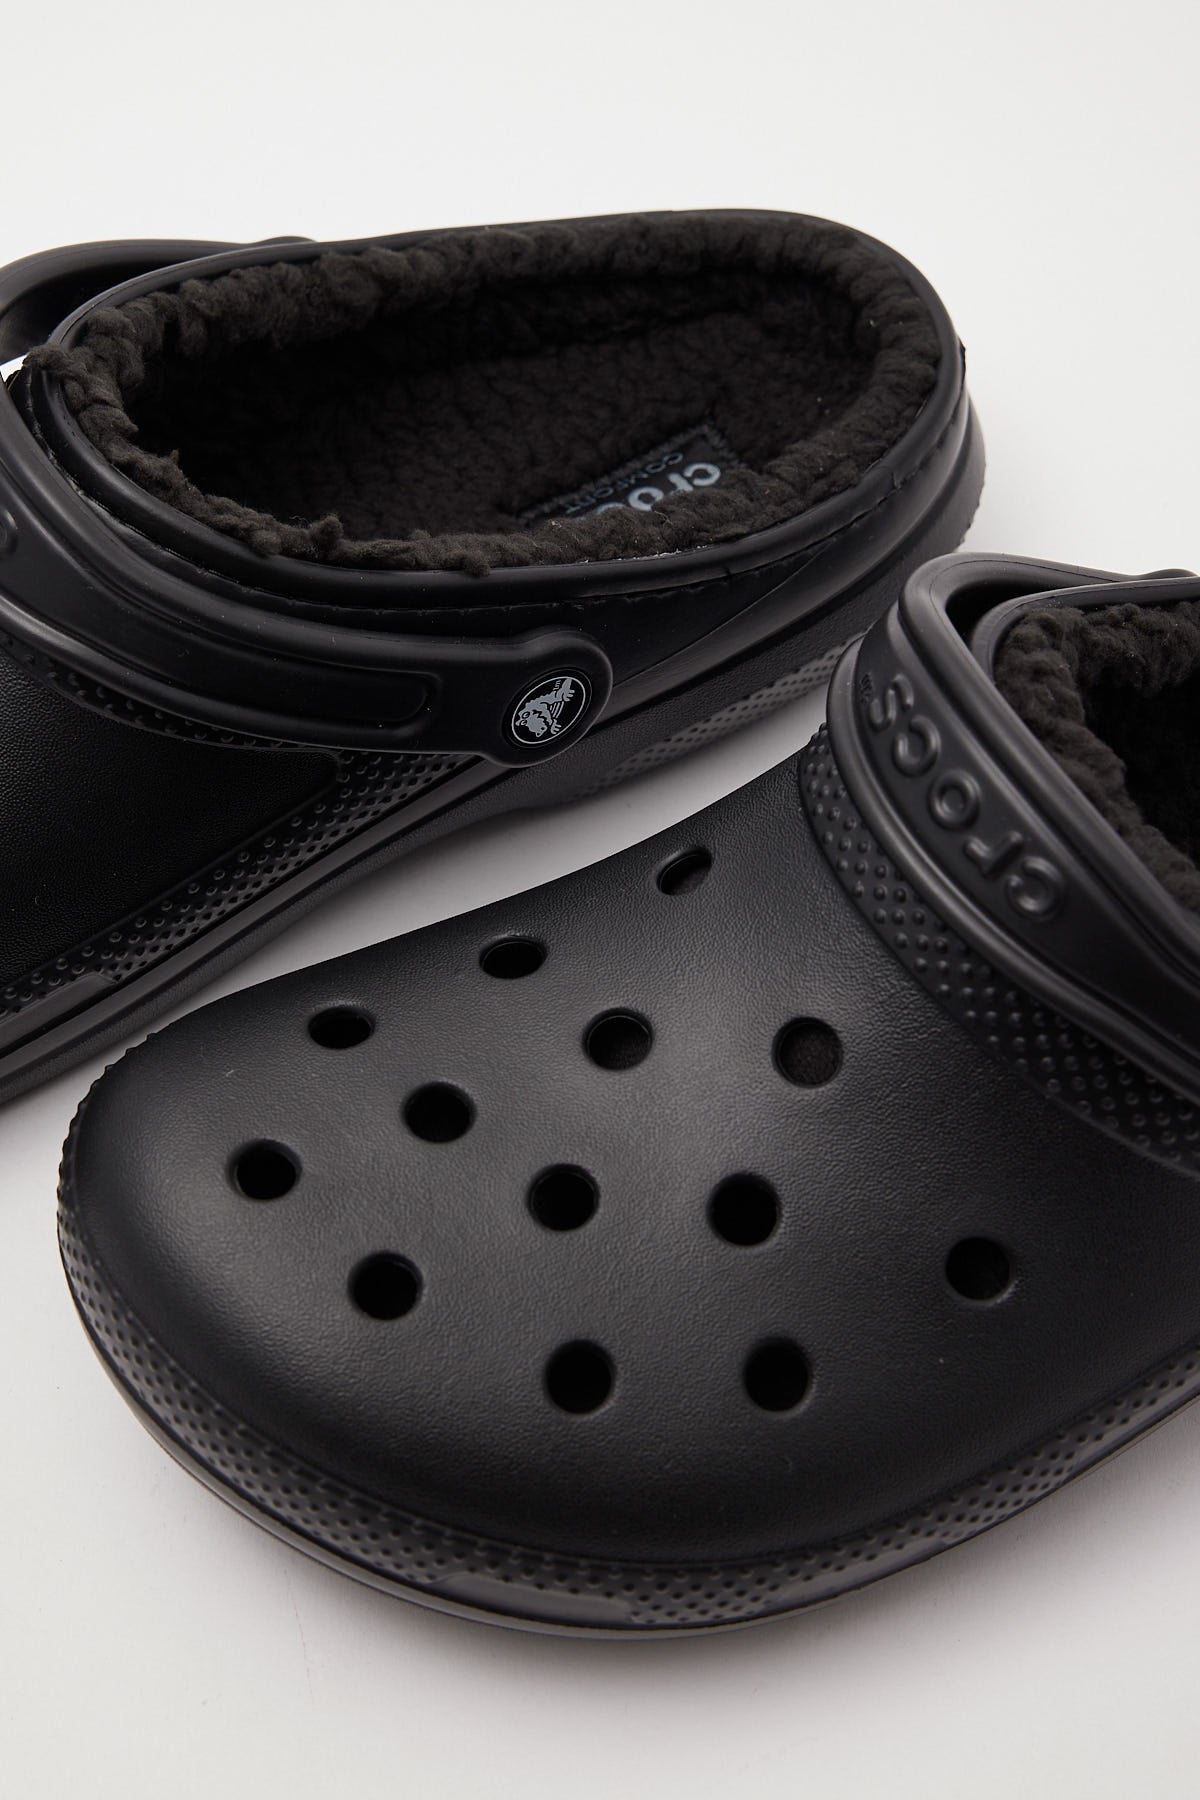 Crocs Classic Lined Clog Black